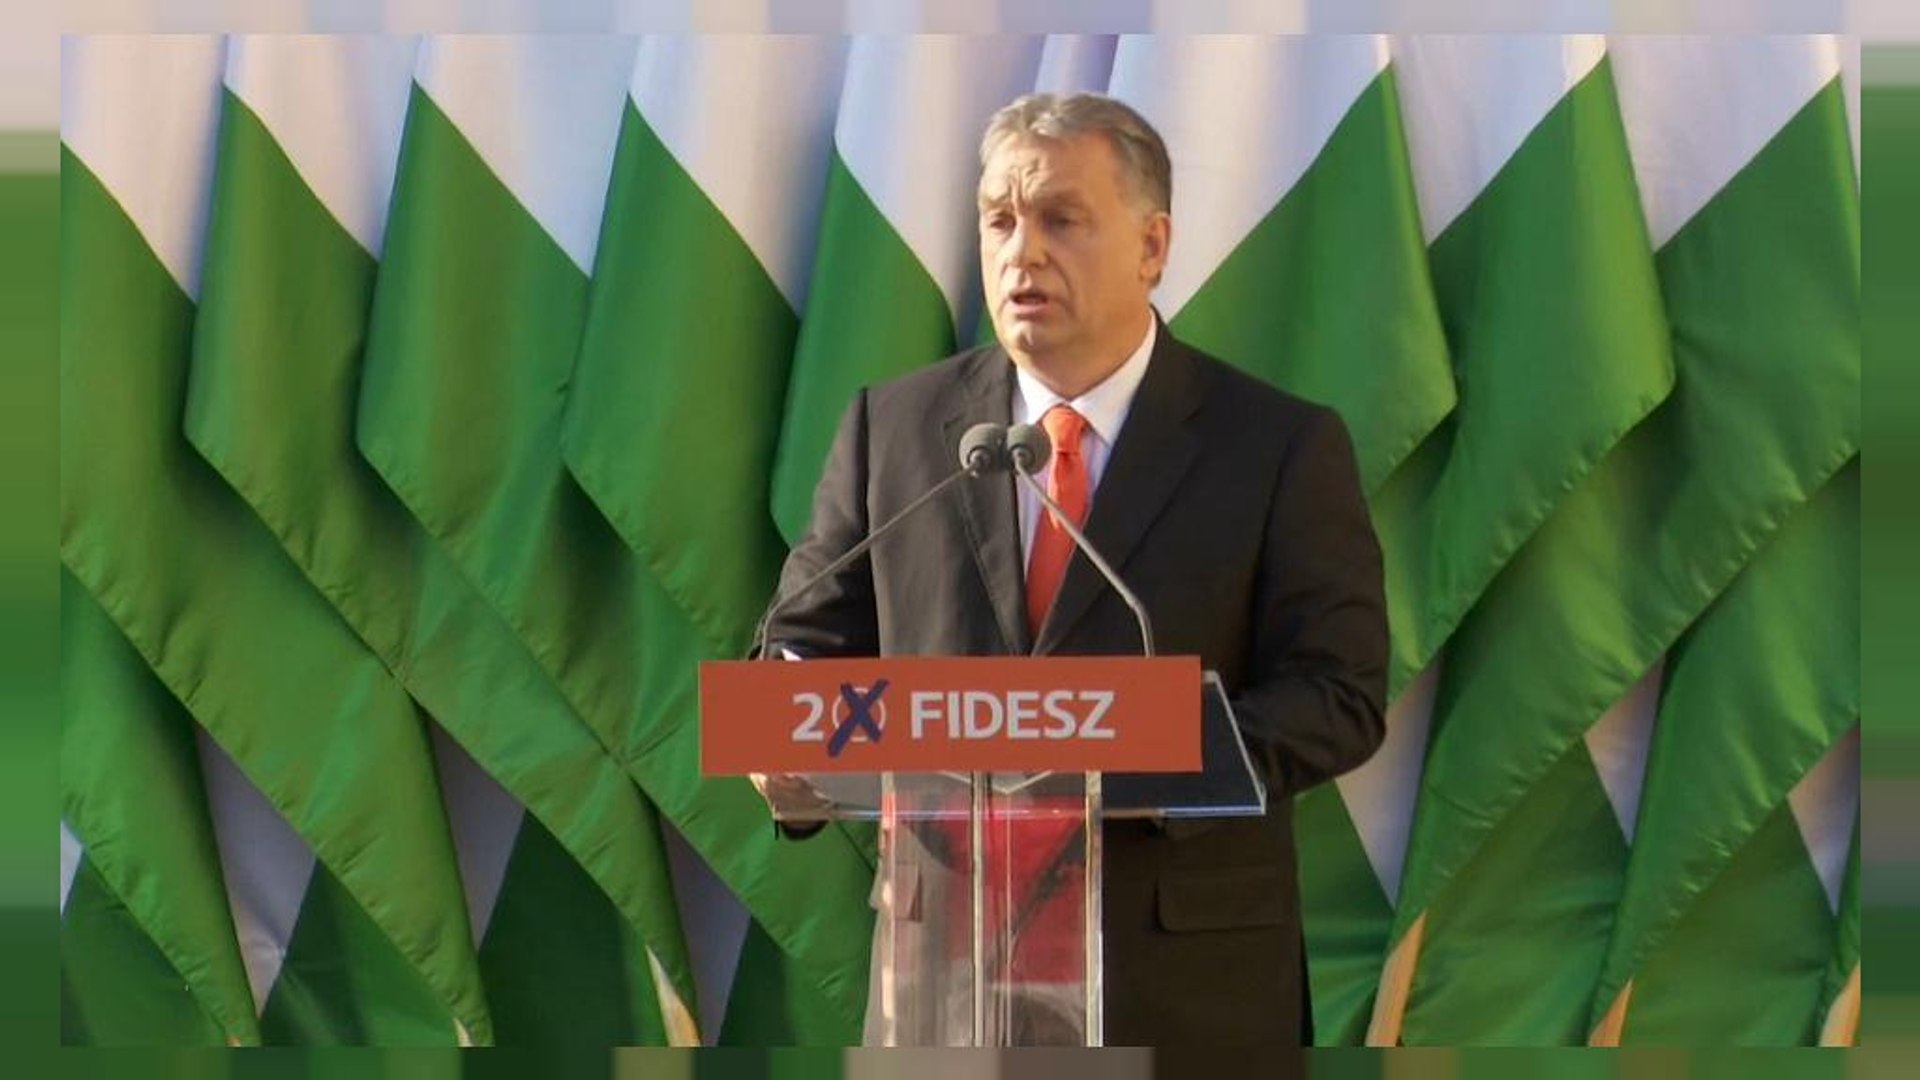 Viktor Orbán cierra la campaña como favorito